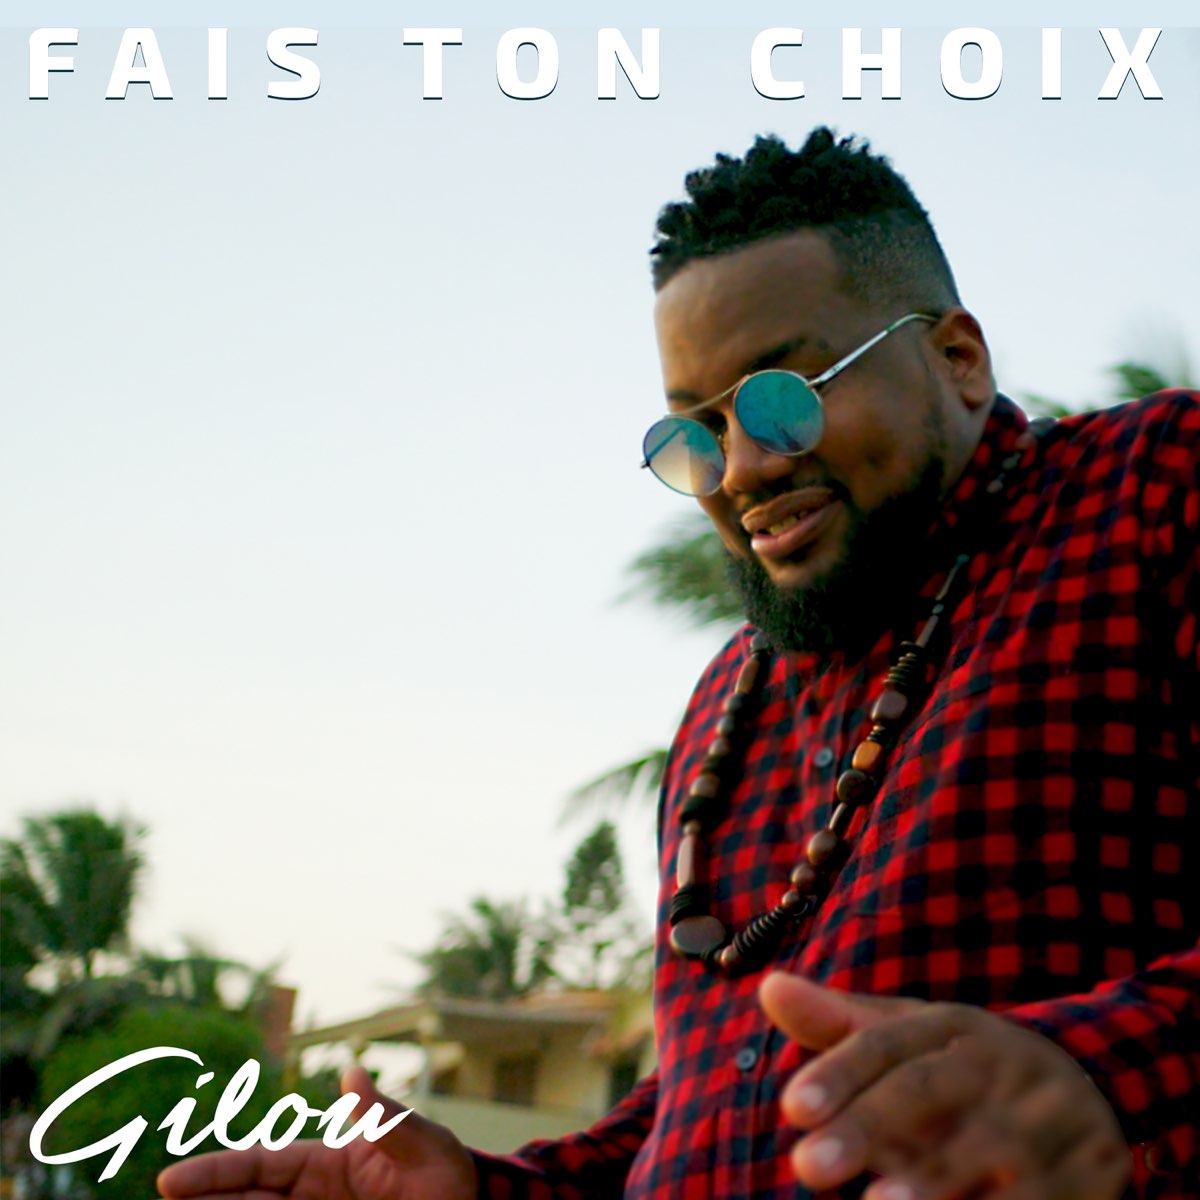 Fais ton choix - Single - Album by Gilou - Apple Music